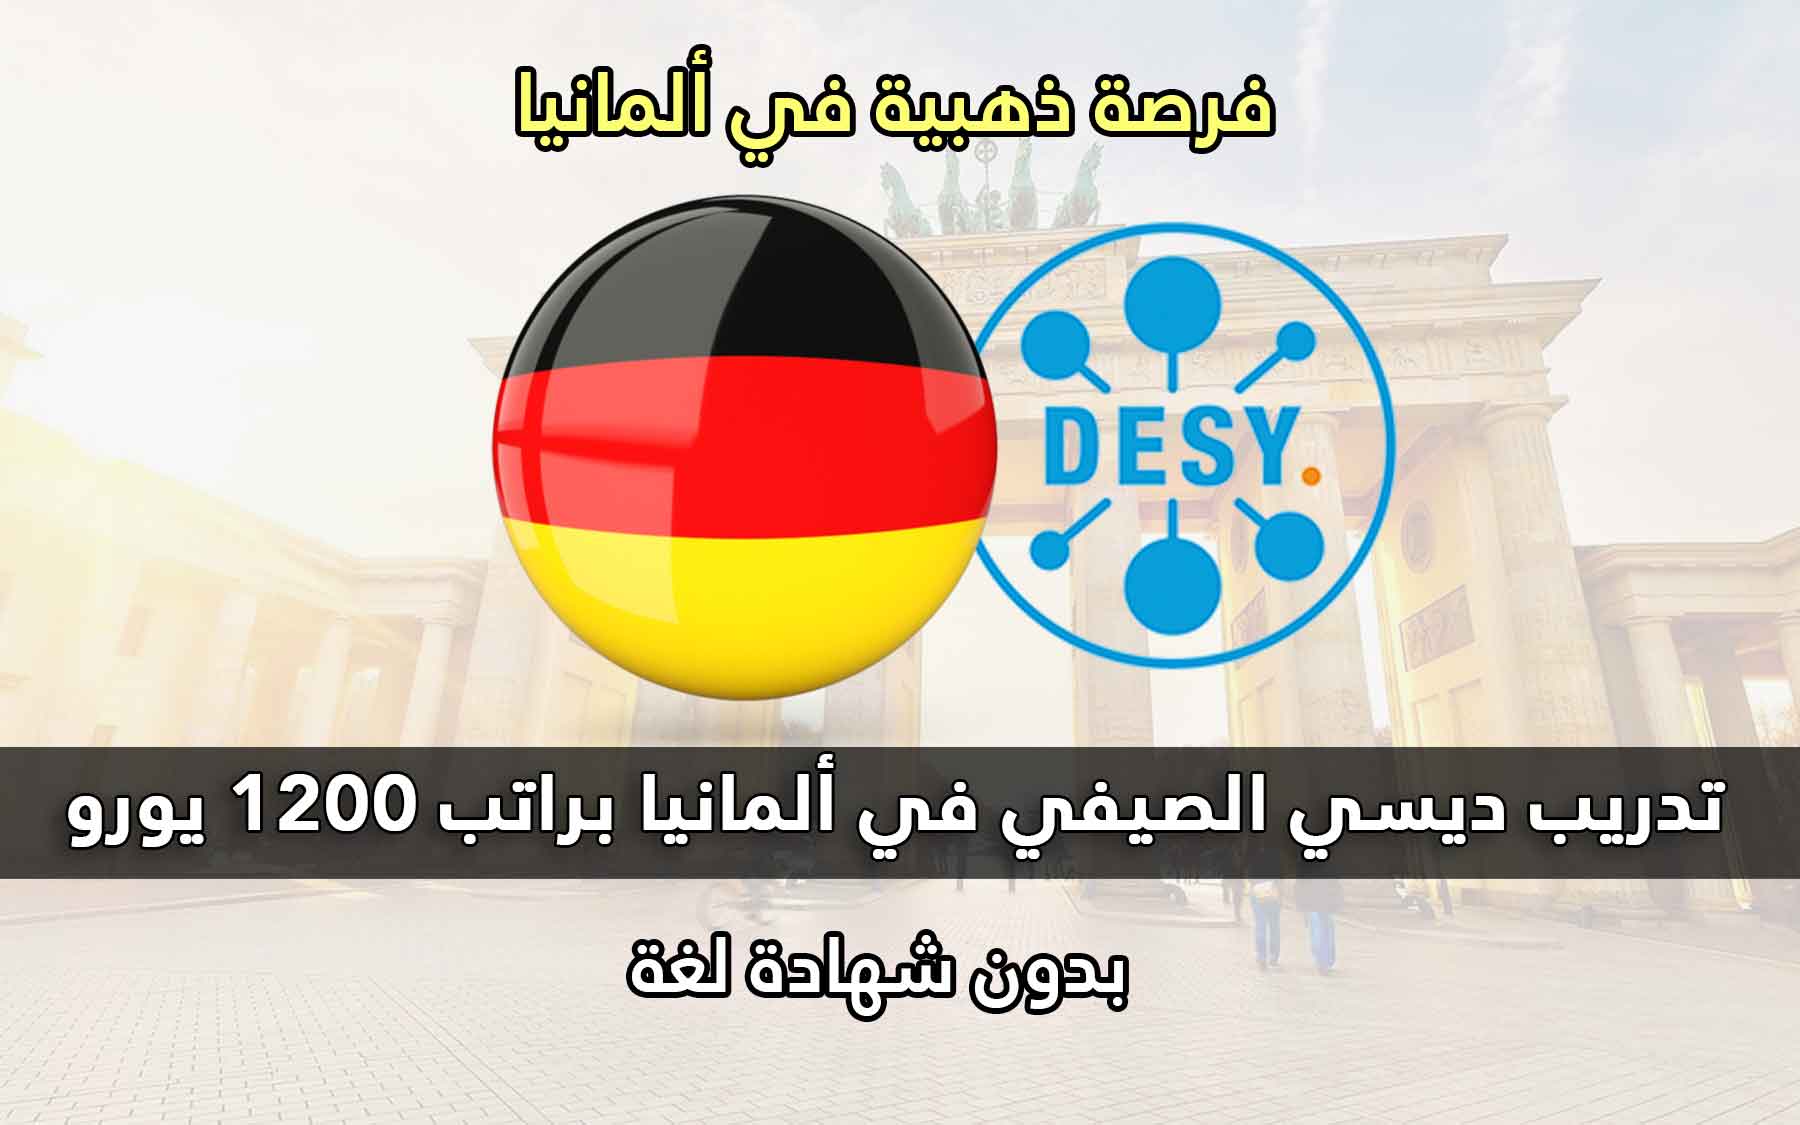 قدم الأن في برنامج تدريب DESY الصيفي للطلاب في ألمانيا 2022 | تدريب مدفوع الأجر